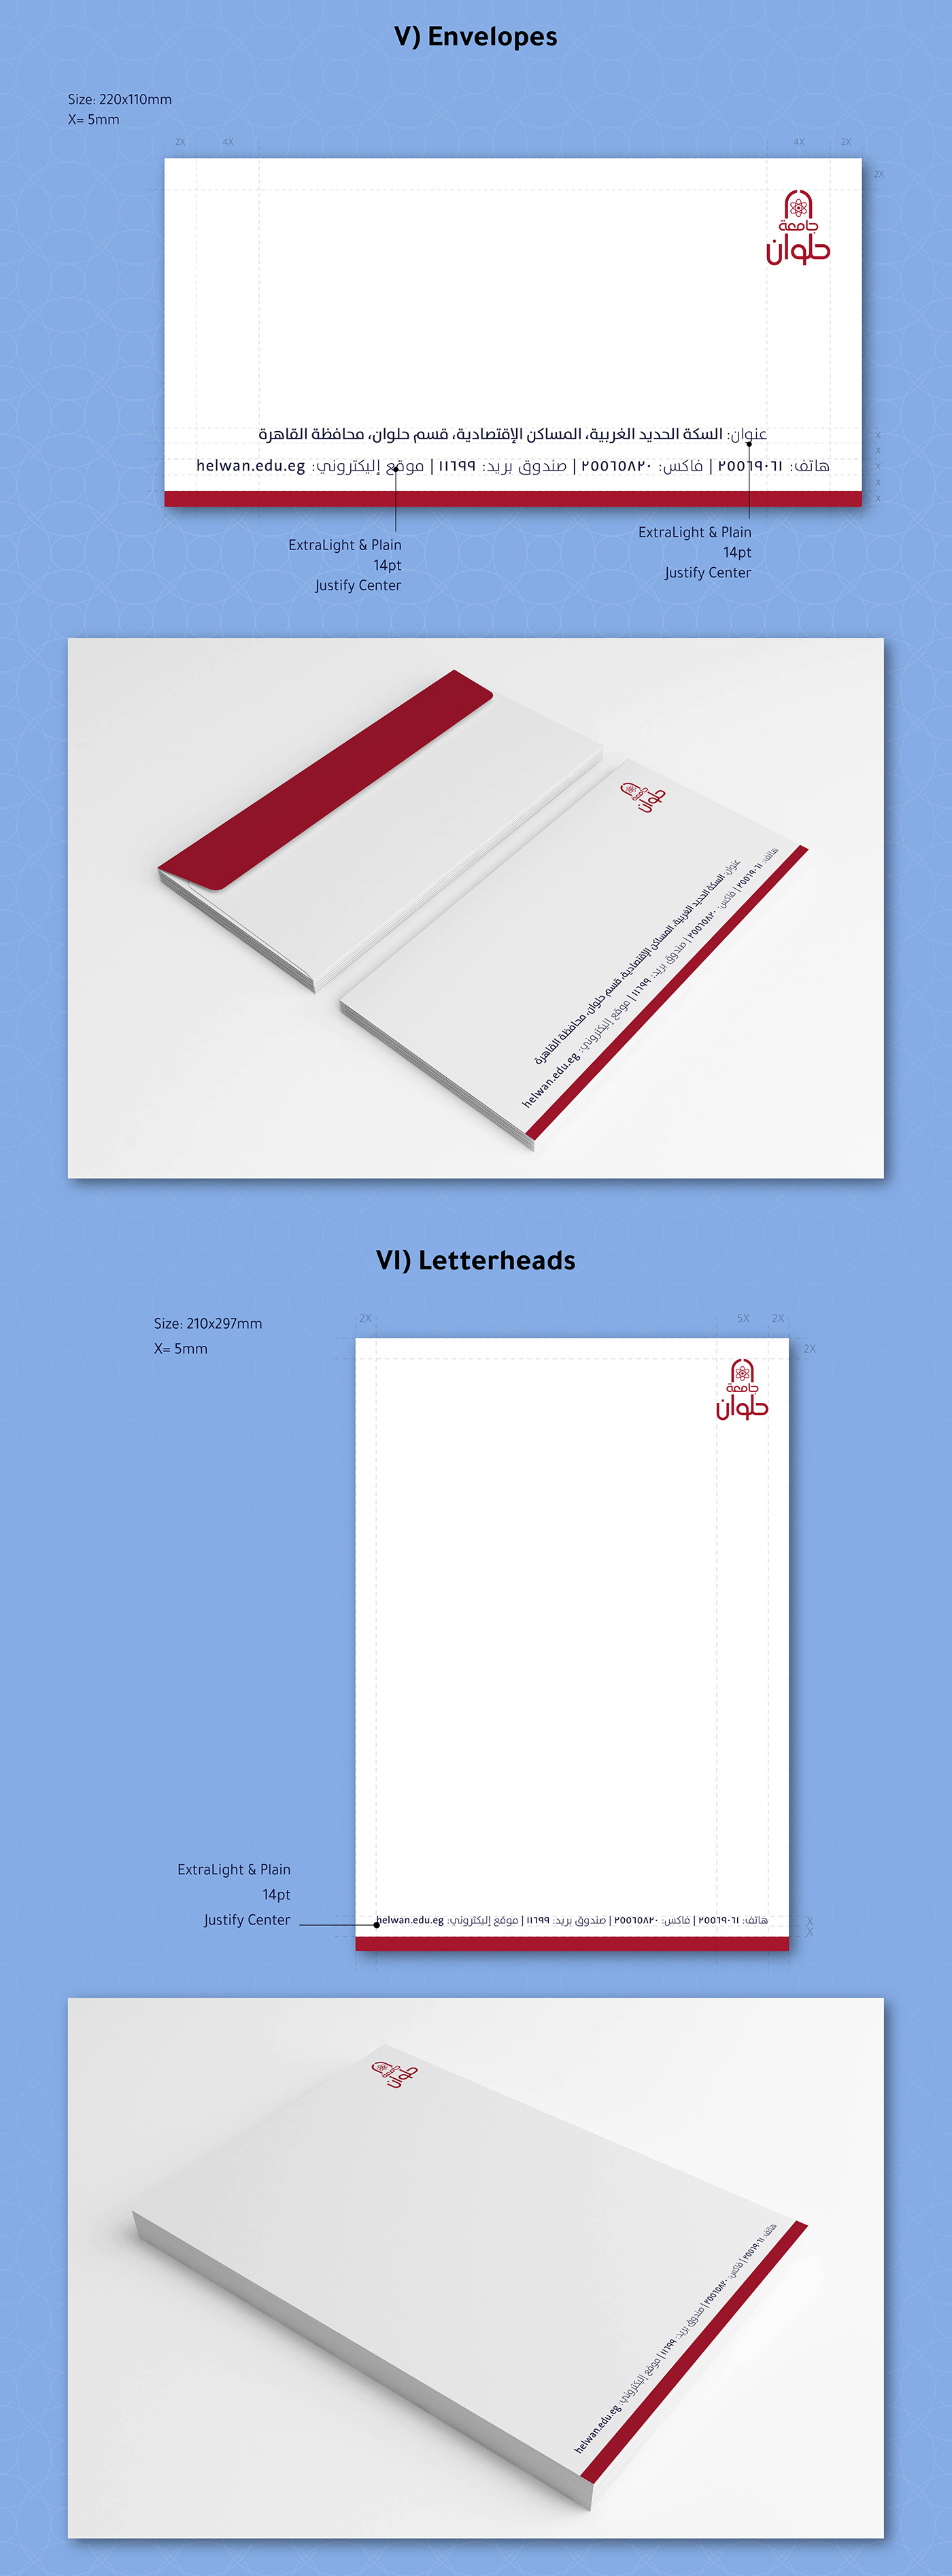 branding  guidelines stationary printed digital wayfinding logo